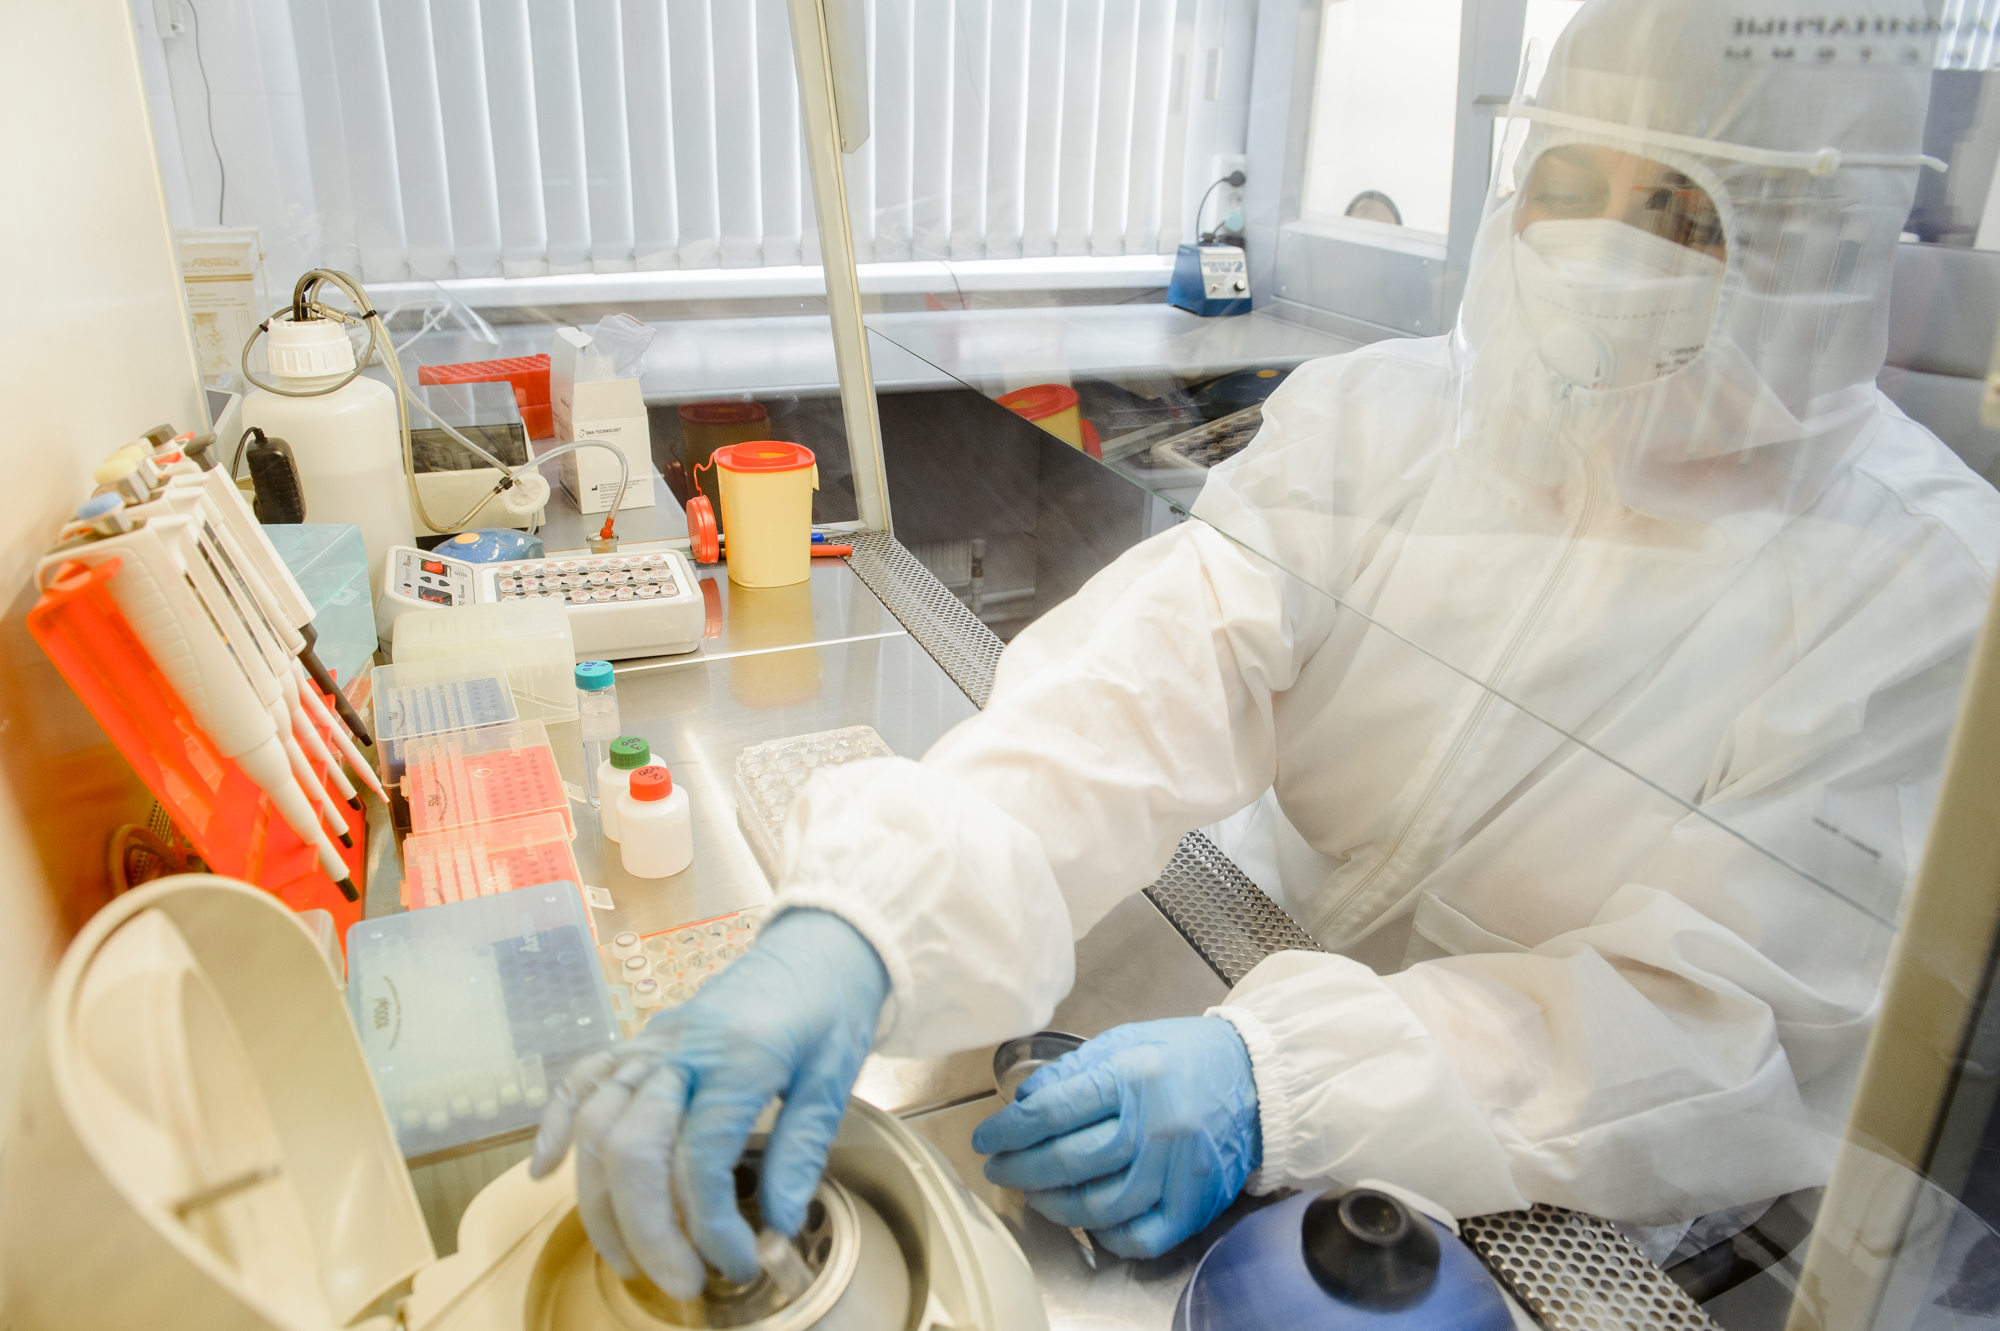 В регионе тесты на COVID-2019 проводят в 14 государственных лабораториях